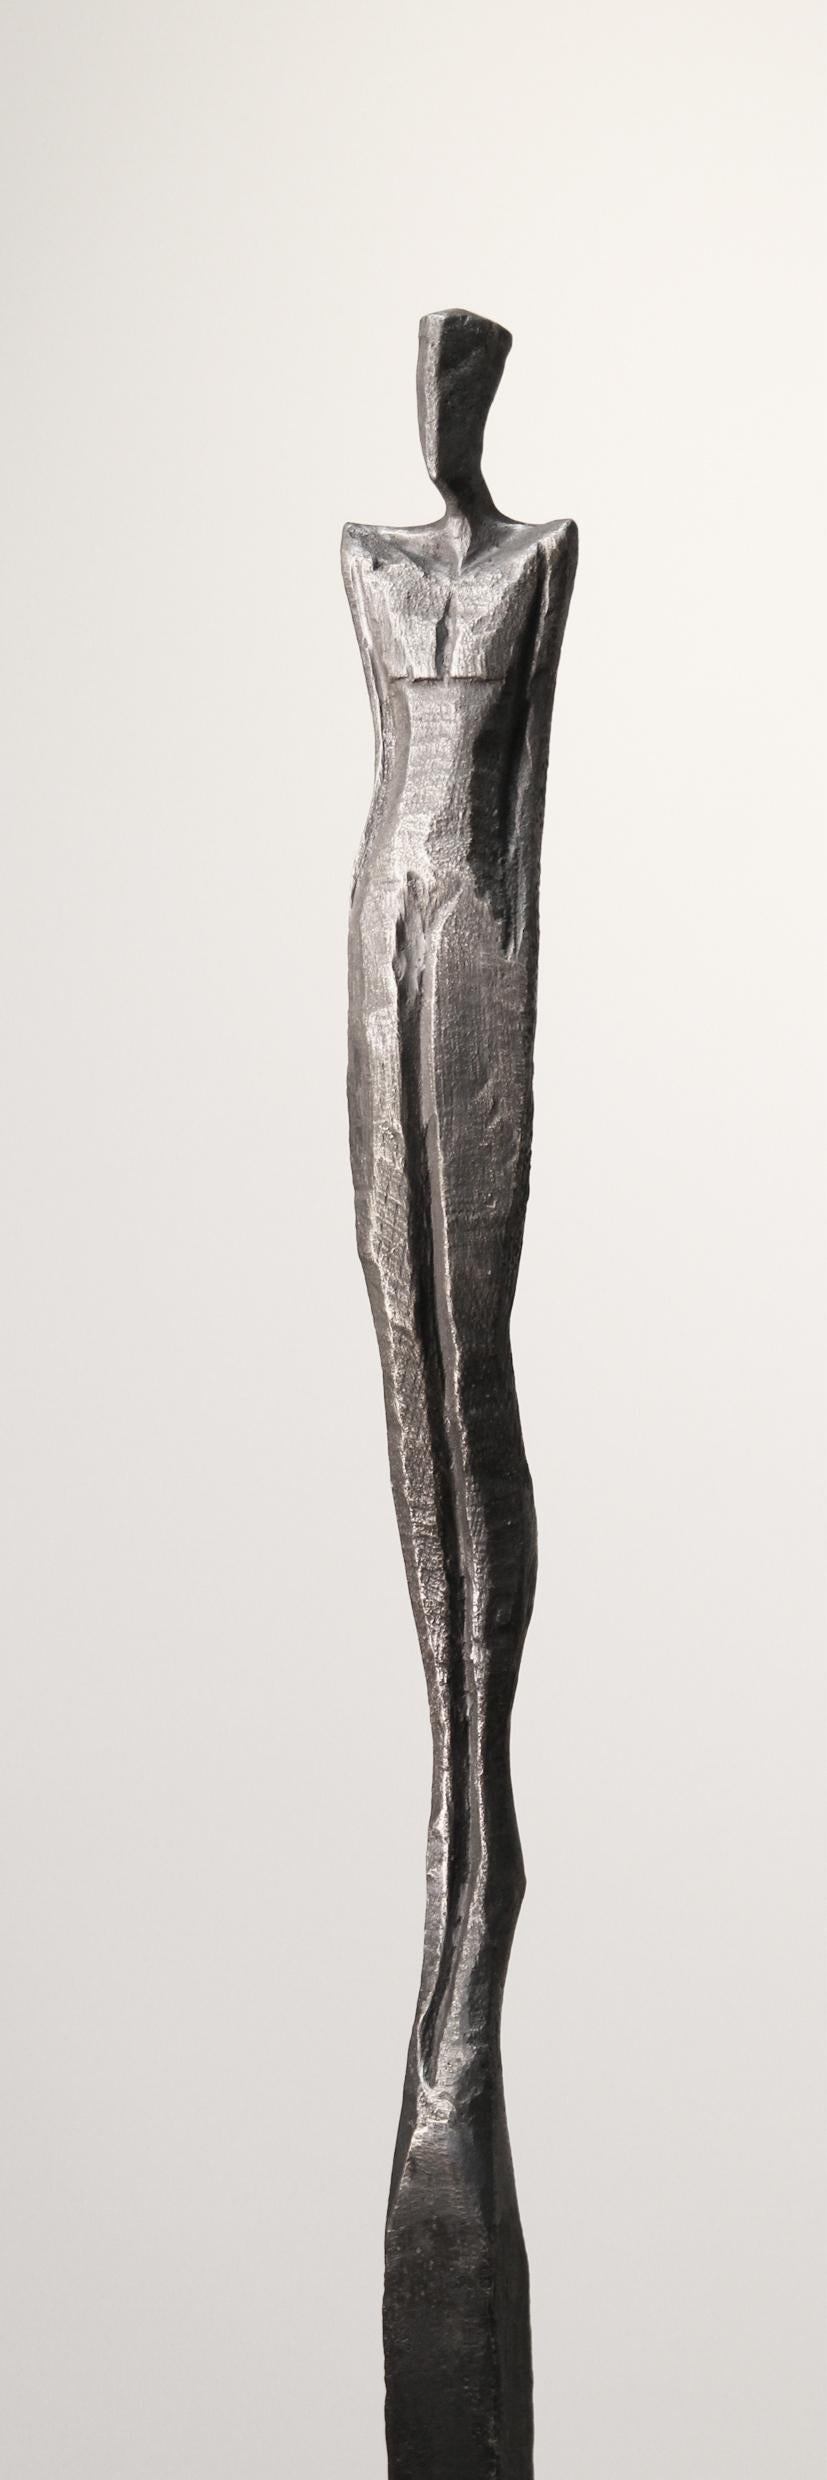 Edward III ist eine hohe, elegante Bronzeskulptur einer menschlichen Figur.  

Nando Kallweit ist ein deutscher Bildhauer, der in Bronze und Eiche arbeitet.  Kallweit schnitzt das Originalstück mit der Kettensäge aus einem Stück Eiche.  Mit dem